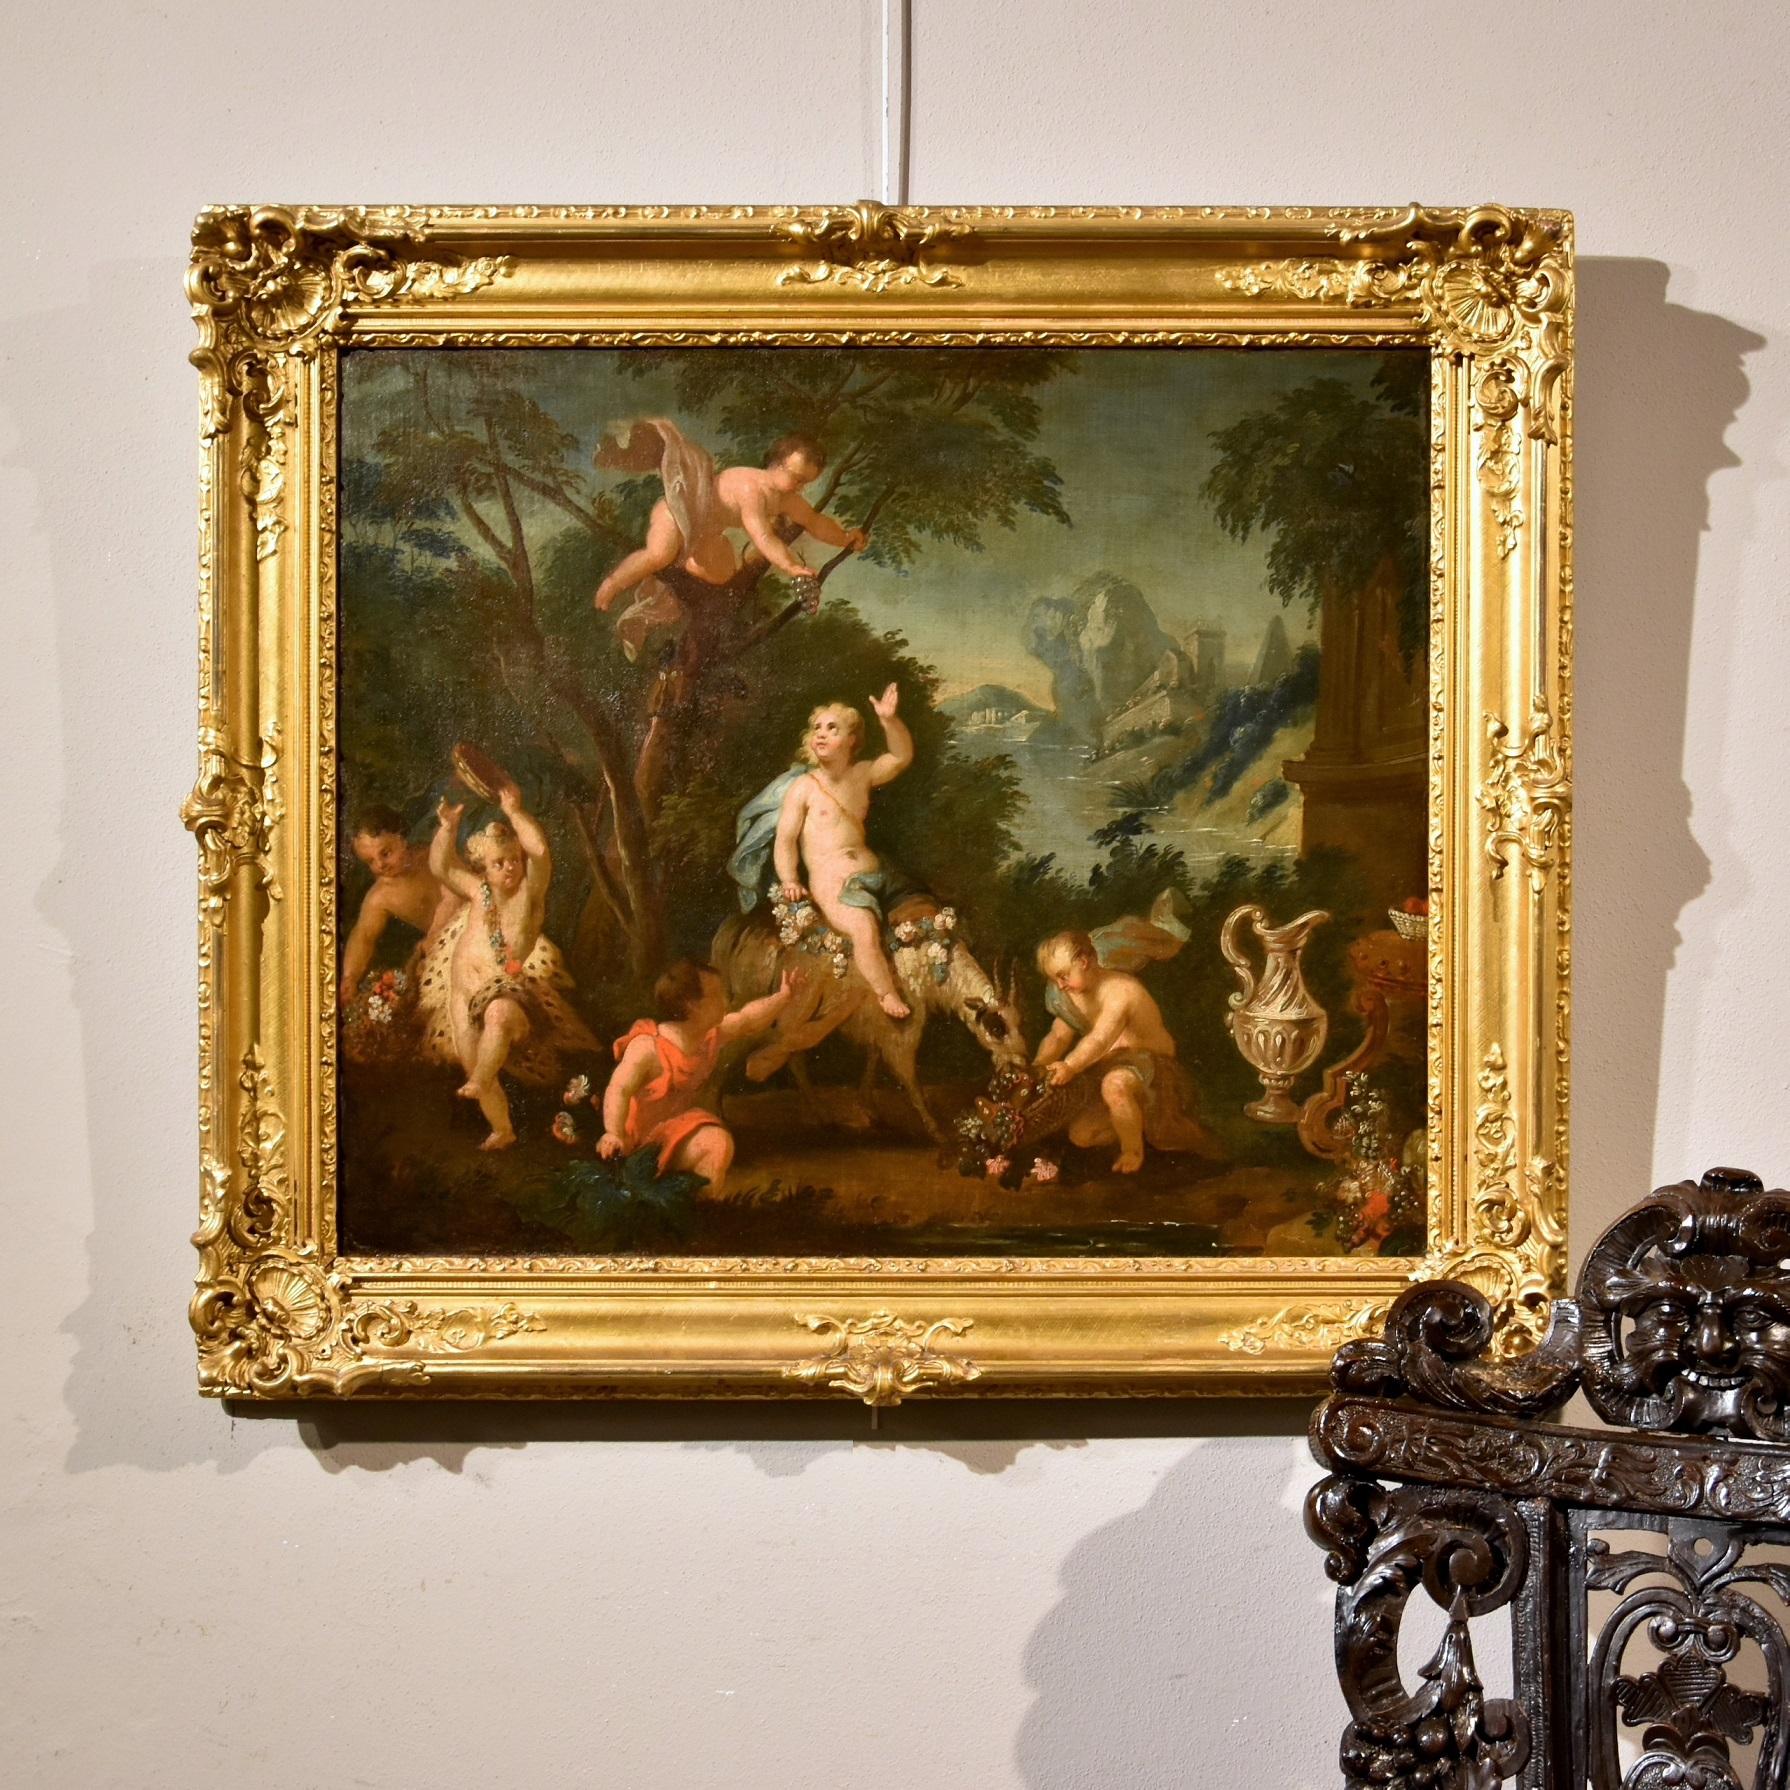 Peinture Brueghel - Paysage de fête - Huile sur toile - Grand maître - Art flamand du 17ème siècle - Painting de Abraham Brueghel (Antwerp, 1631 - Naples, 1697)